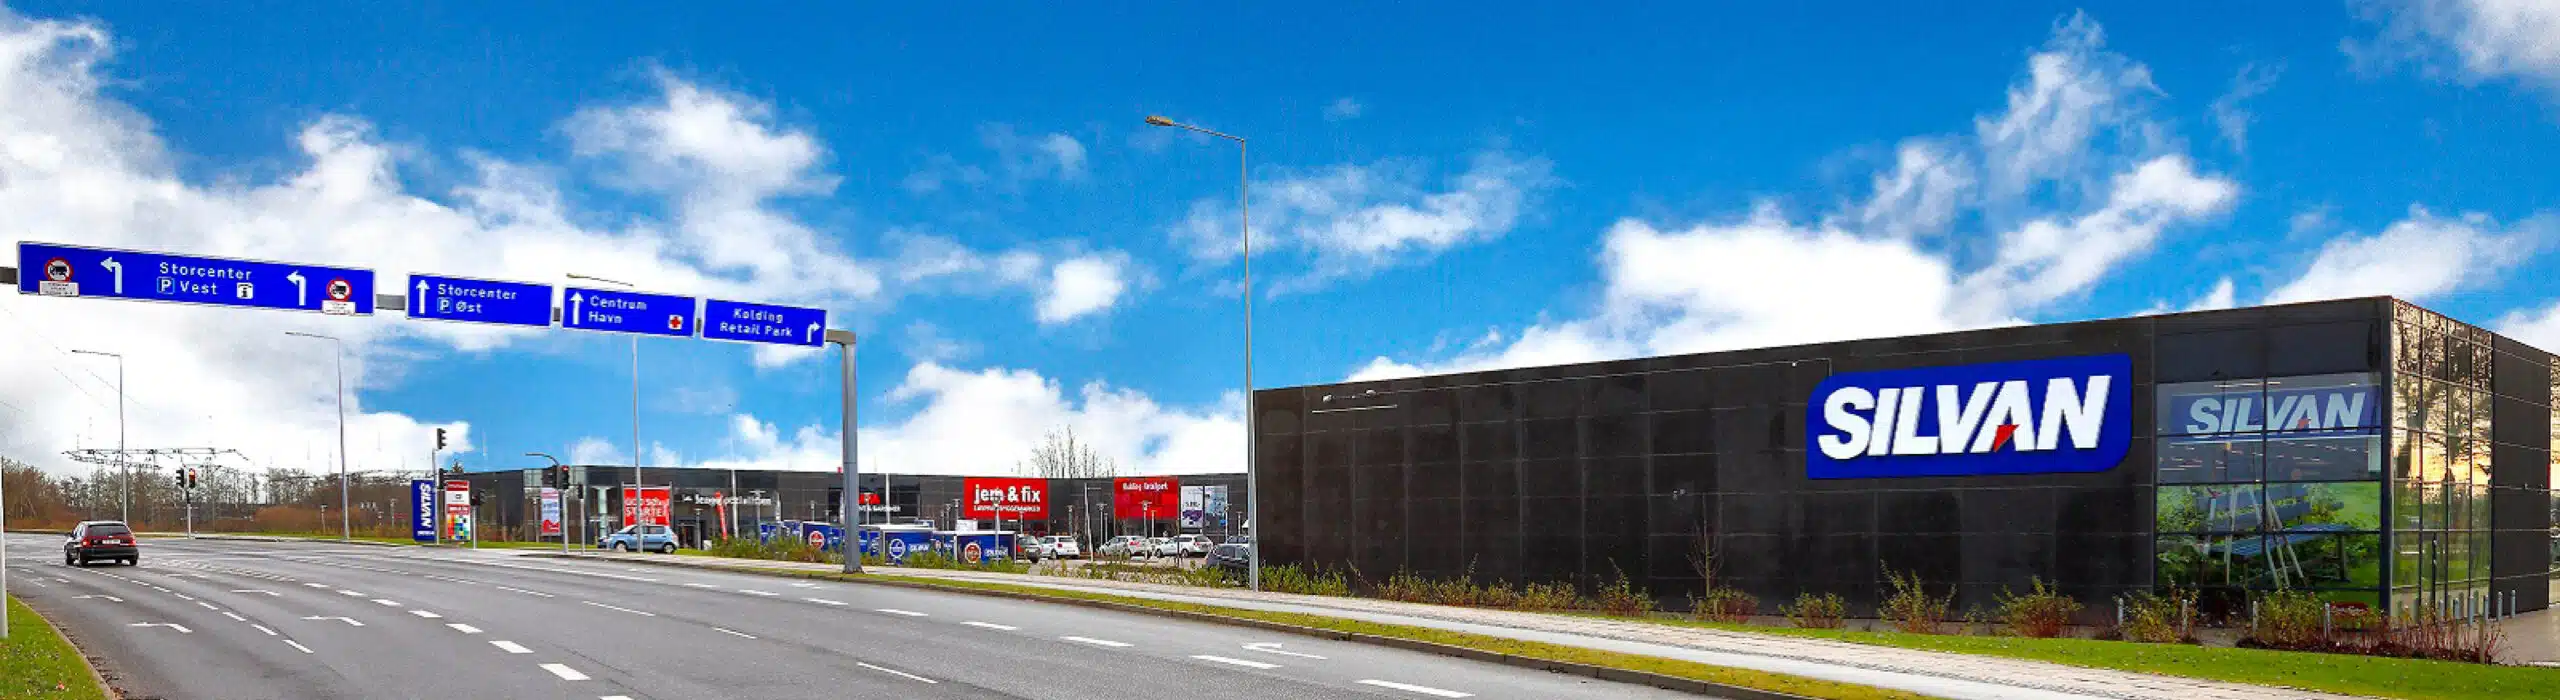 Ejendomsinvestering i Kolding med jem&fix som lejer beliggende Skovvangen 49, 6000 Kolding.